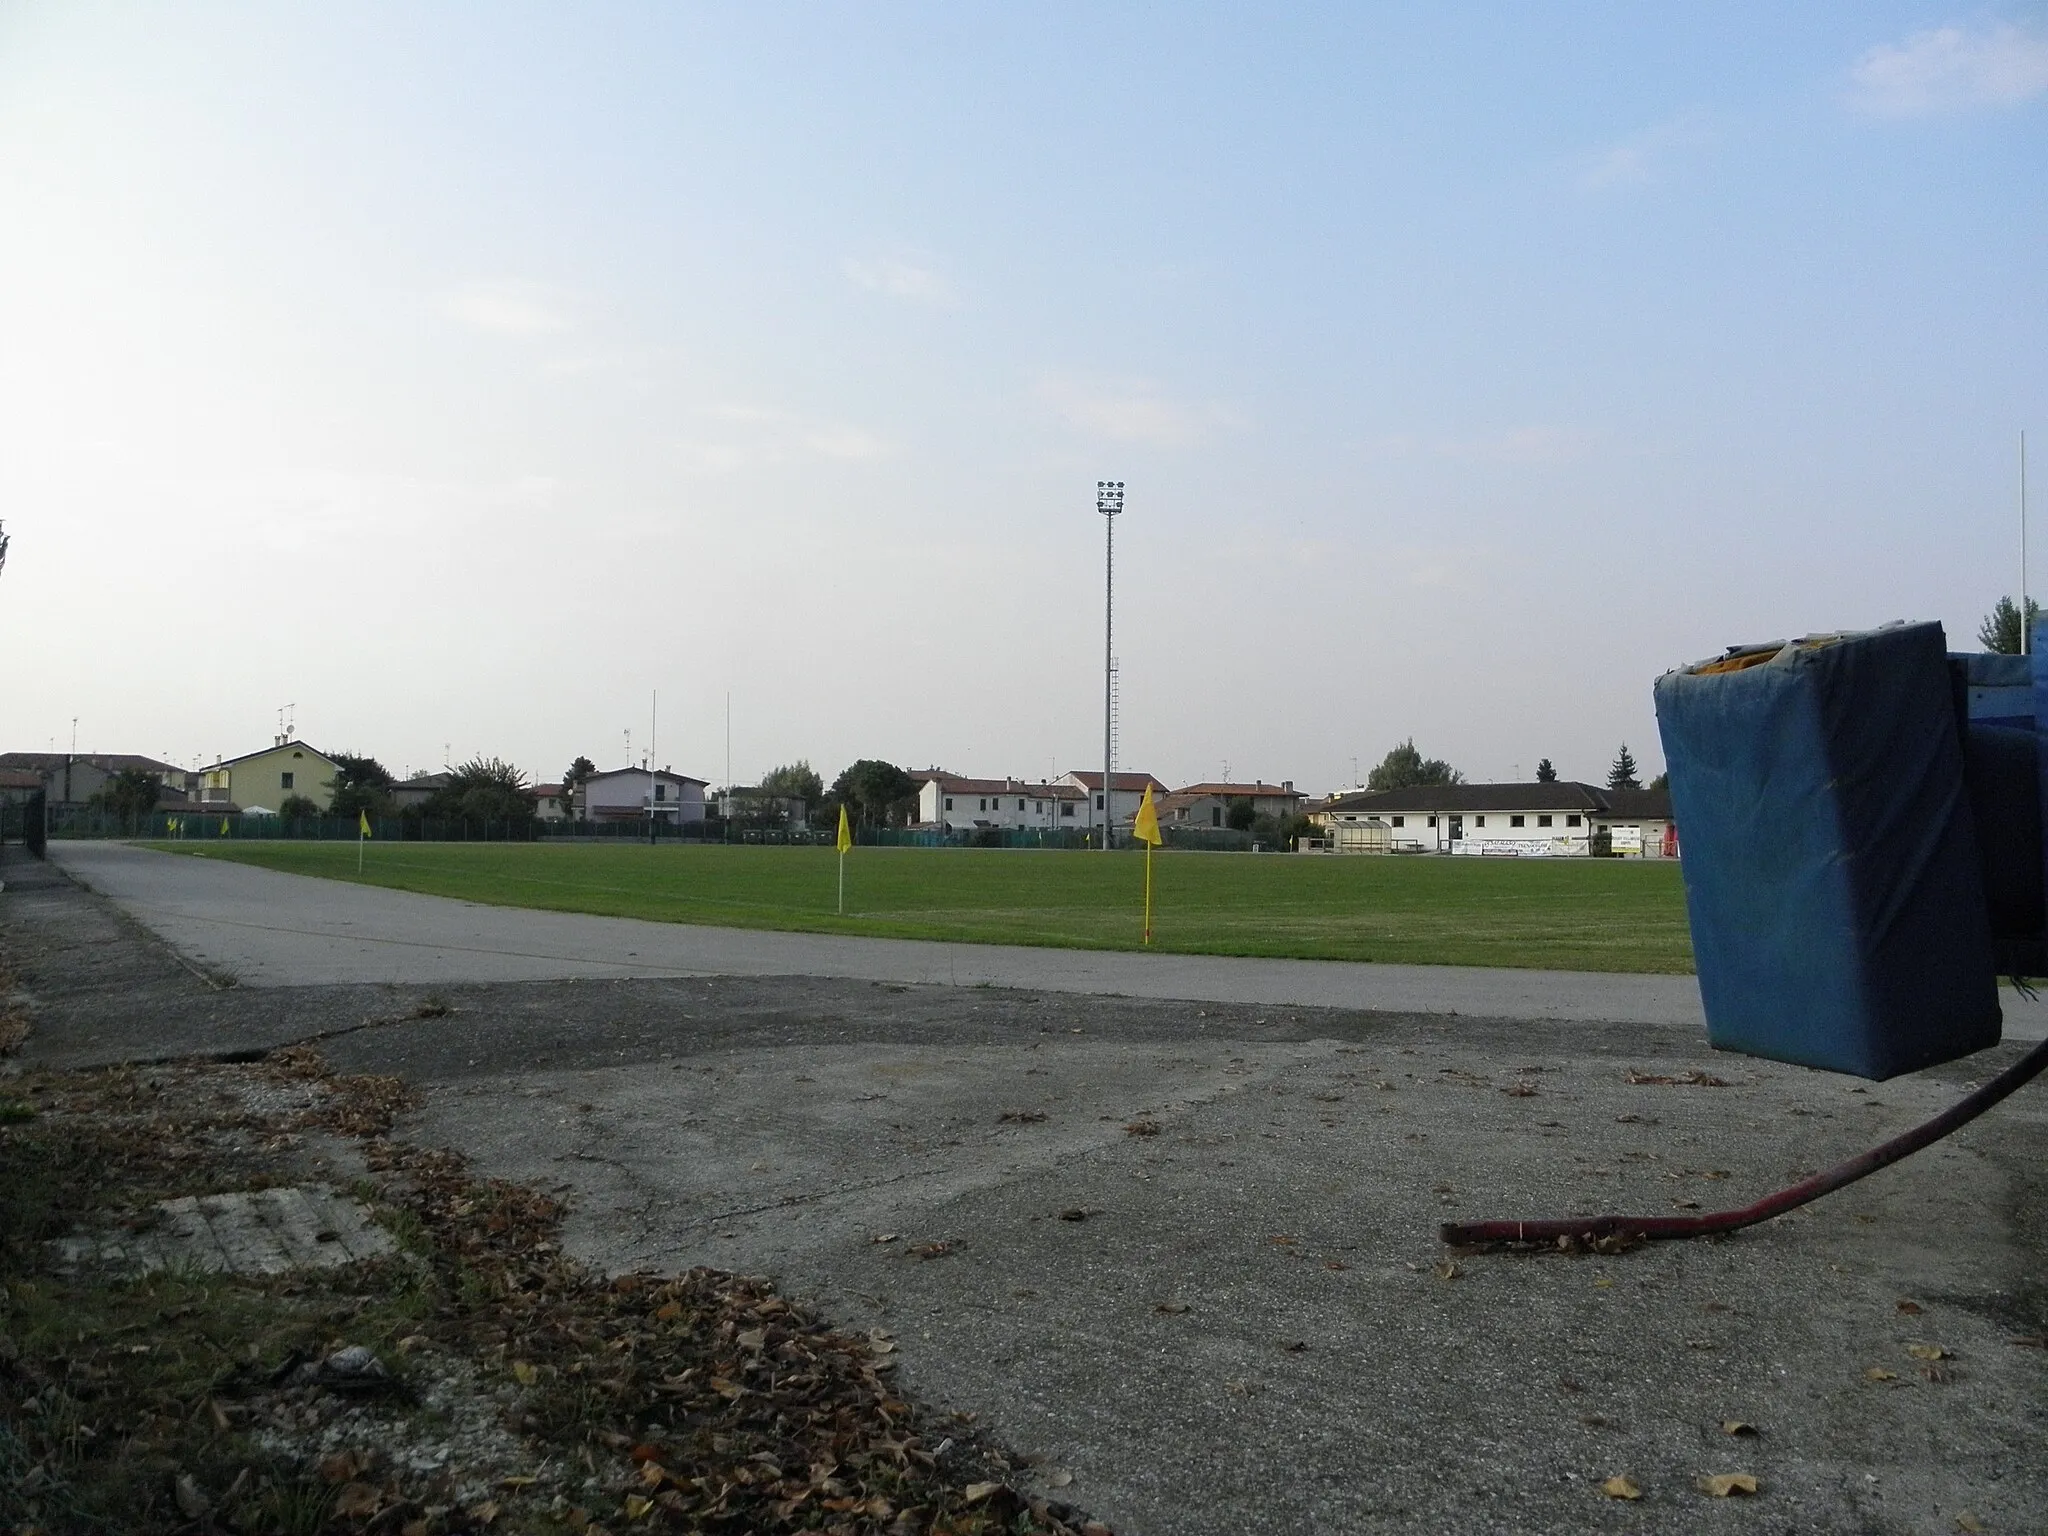 Photo showing: Villadose, lo Stadio Rugby Villadose sito in Via Pelandra, impianto dove gioca l'ASD Rugby Villadose.